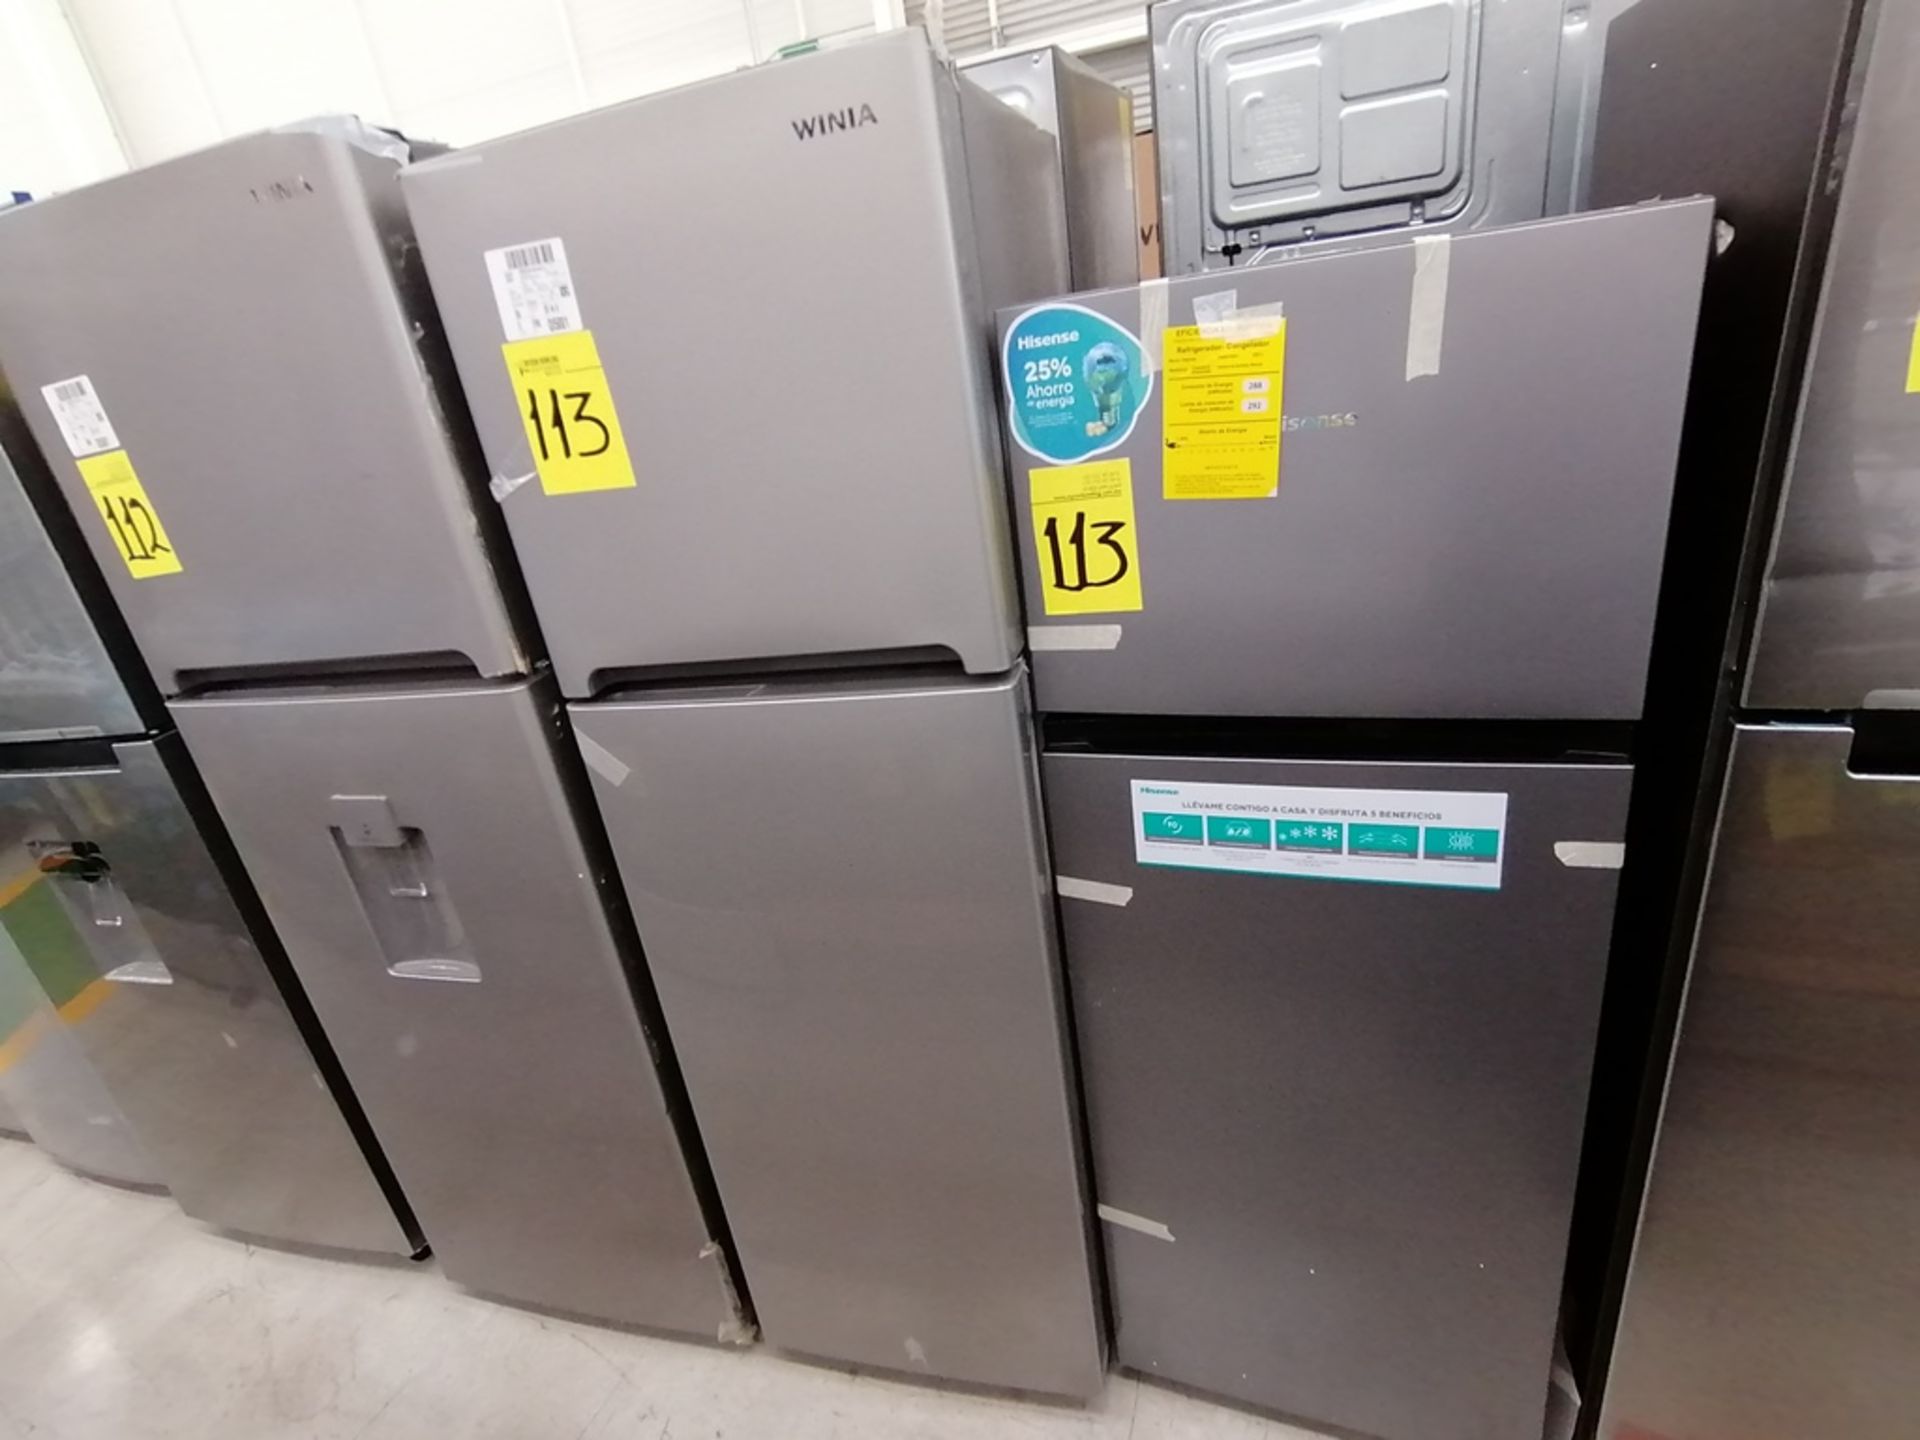 Lote de 2 refrigeradores incluye: 1 Refrigerador, Marca Winia, Modelo DFR25210GN, Serie MR21ZN08401 - Image 10 of 15